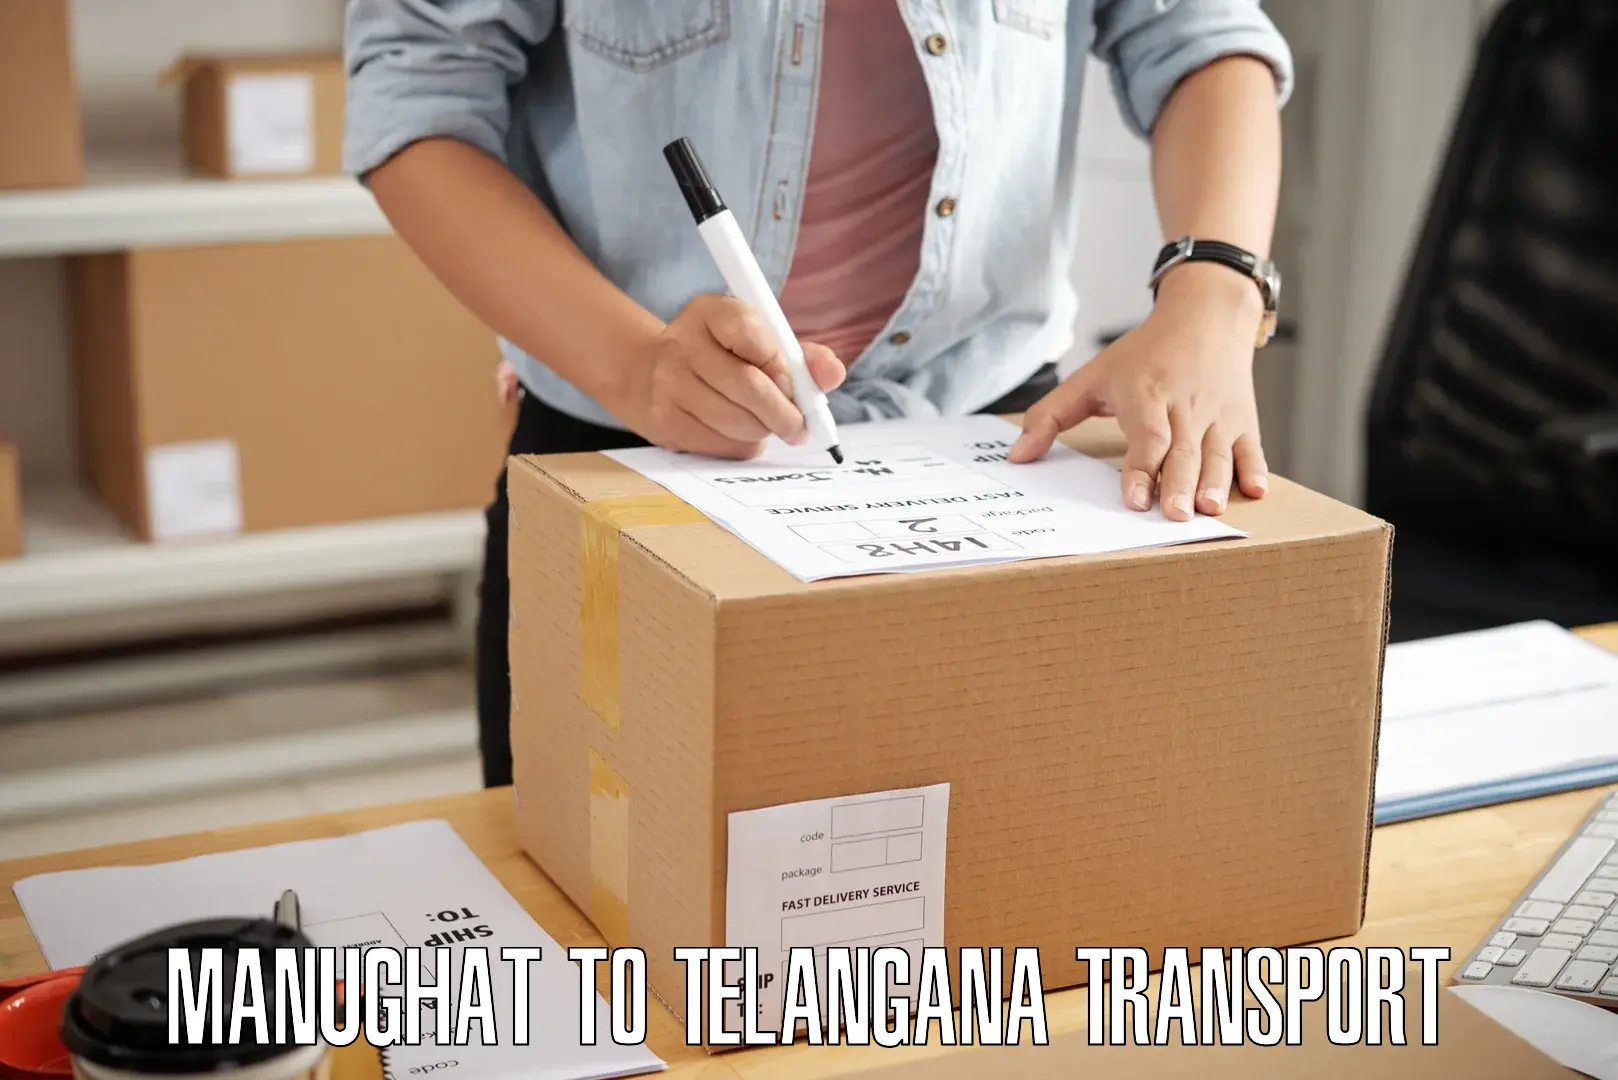 Furniture transport service Manughat to Telangana